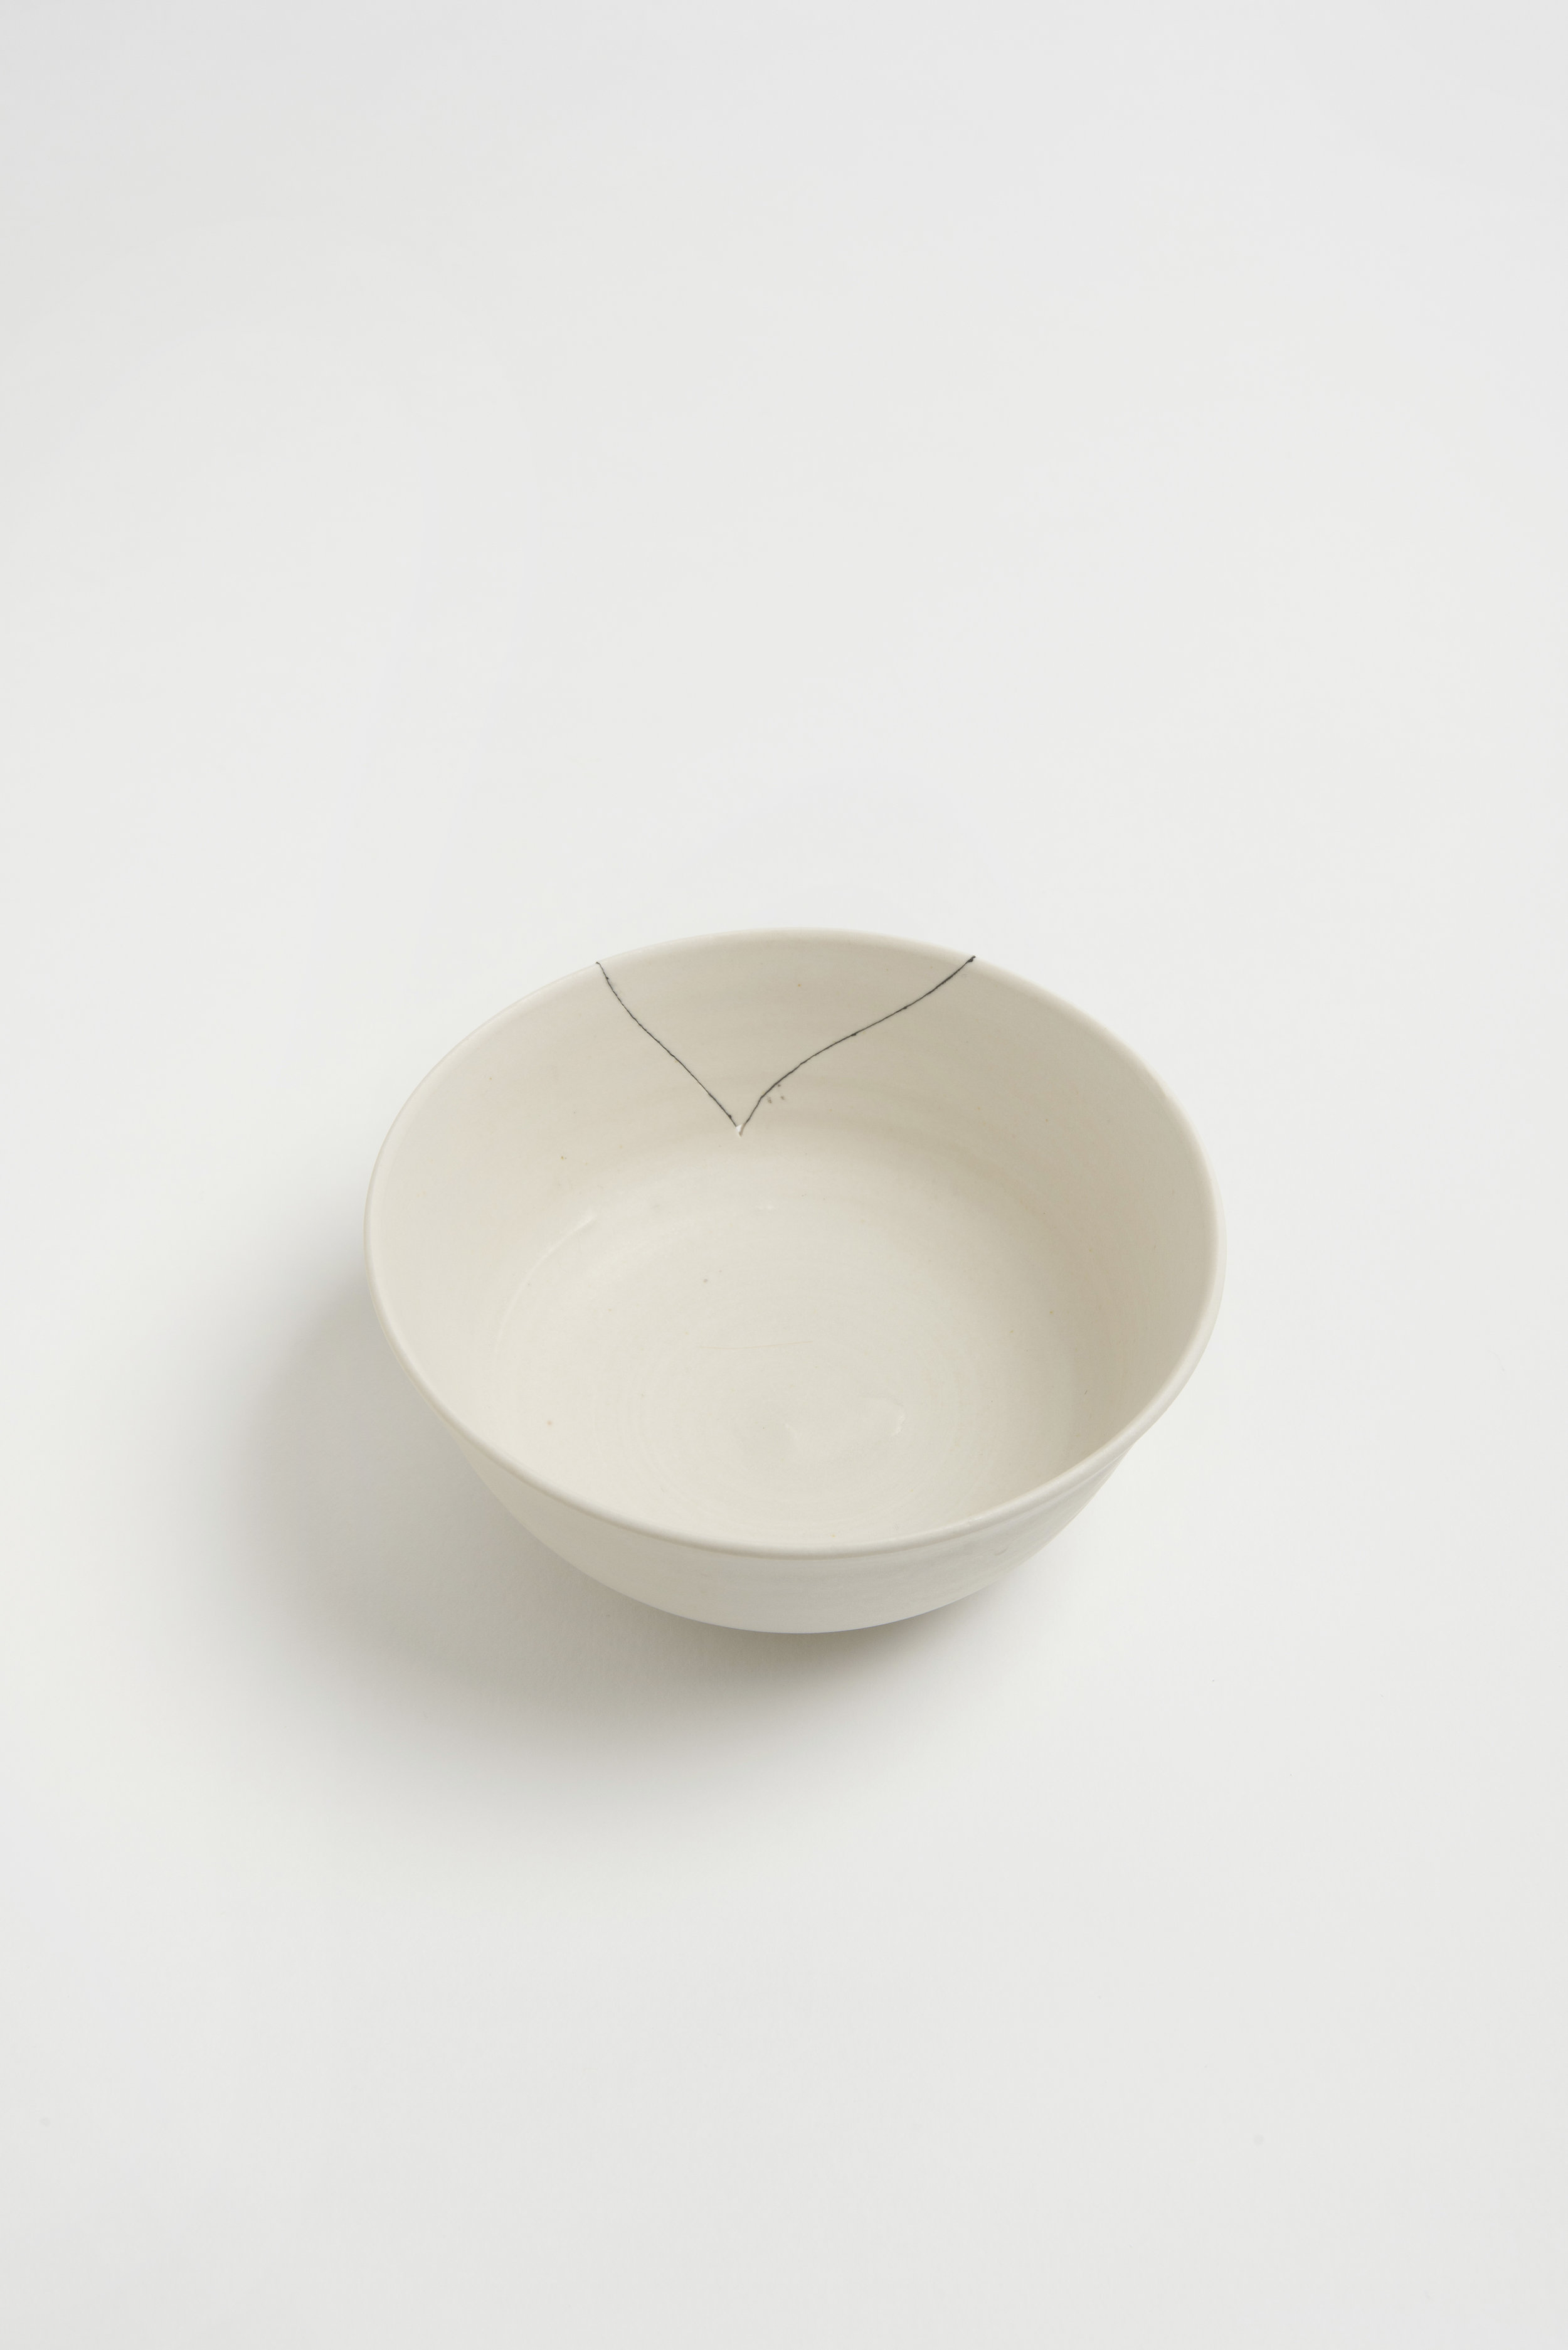 white-fracture-series-bowl-romy-northover-ceramics-the-garnered-24.jpg